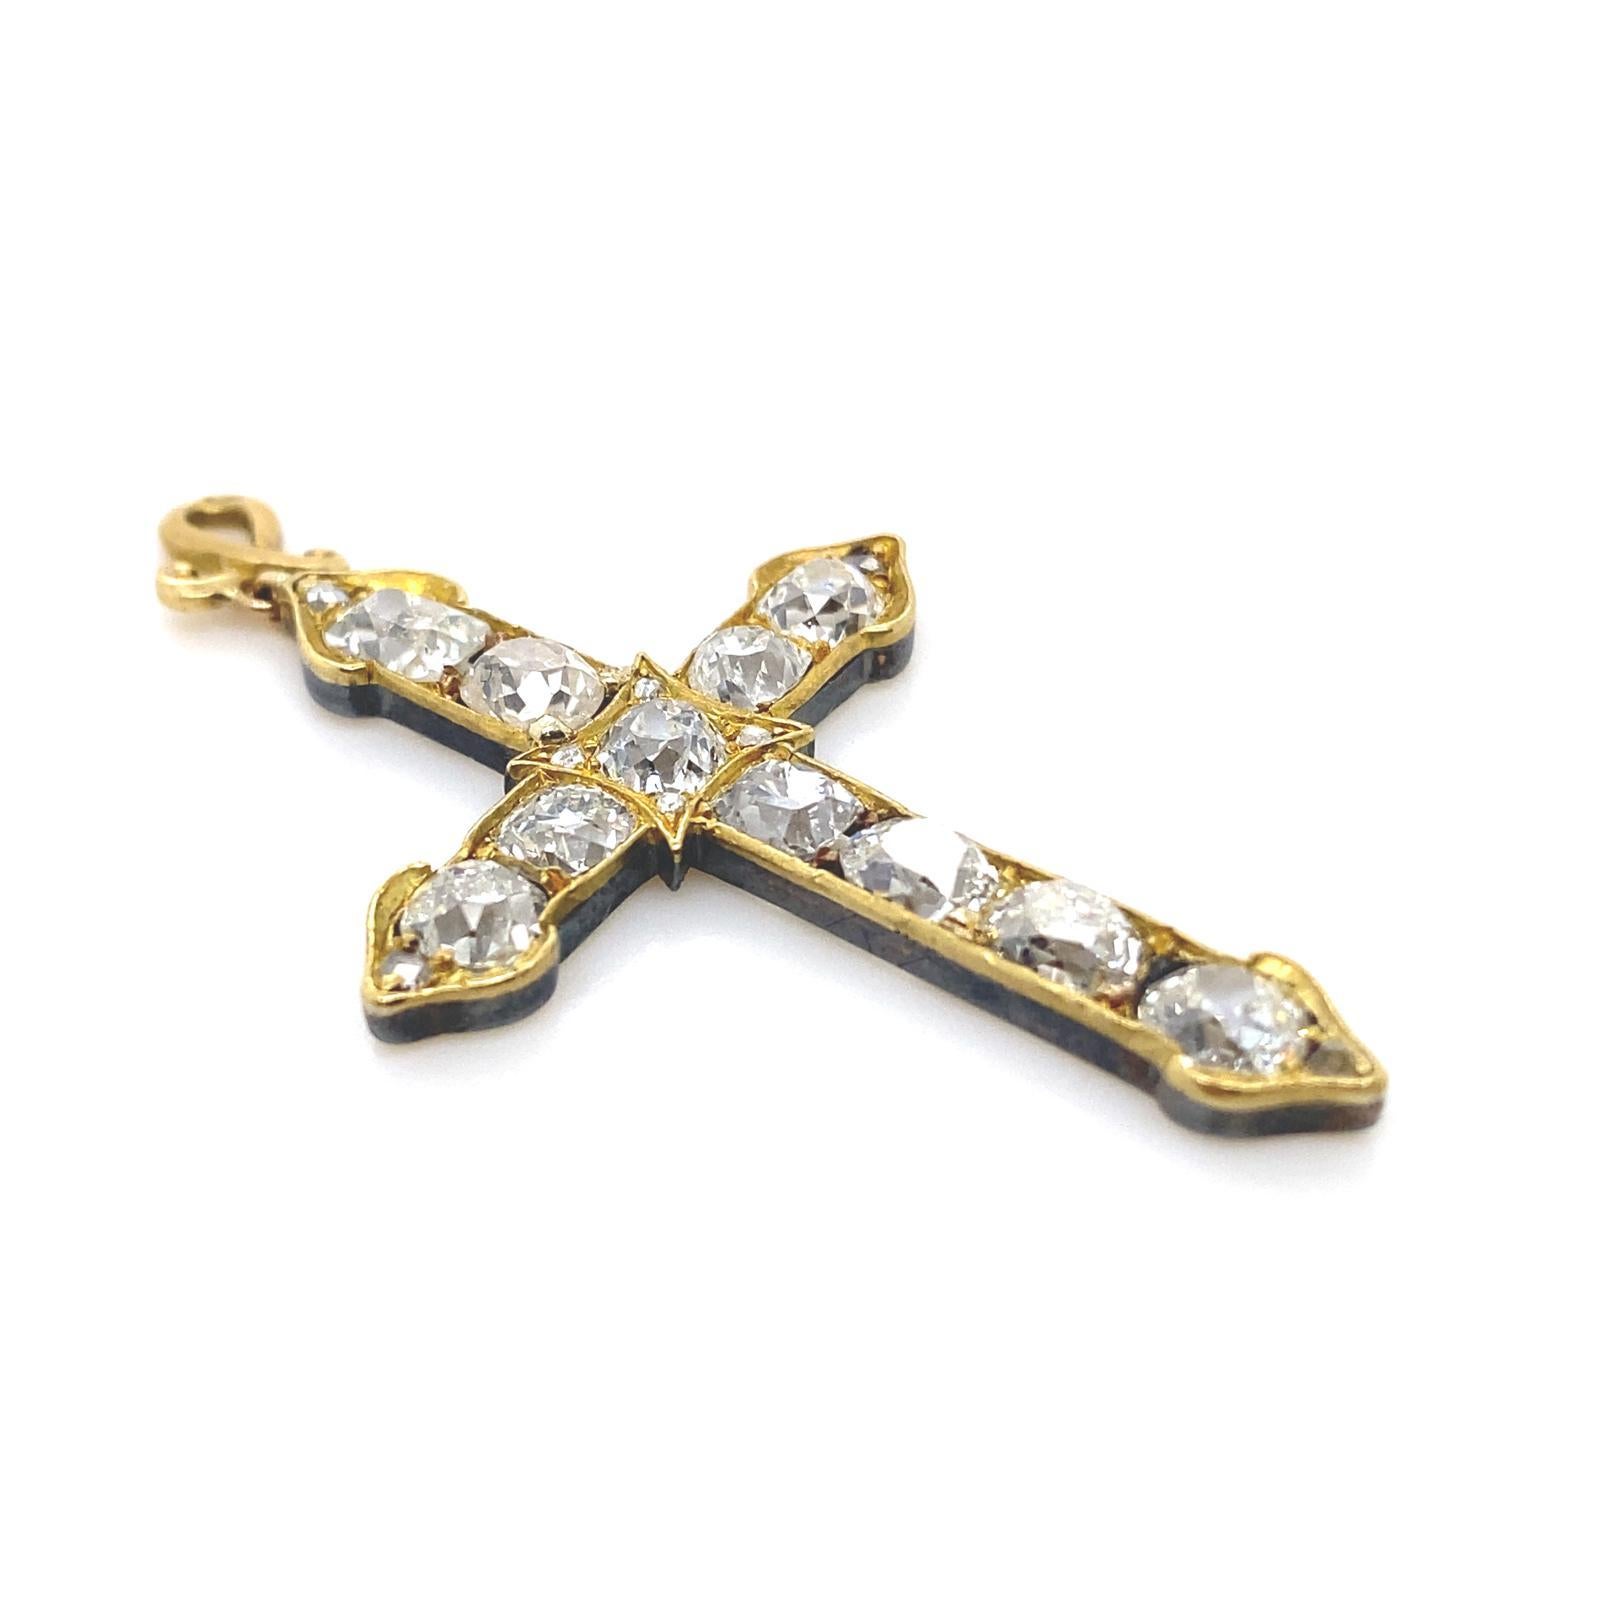 Pendentif en forme de croix en or jaune 18 carats et en argent serti de diamants.

La croix est composée de 11 diamants anciens en forme de coussin et de losange, sertis de griffes et de grains, et de petits diamants taillés en rose à chaque